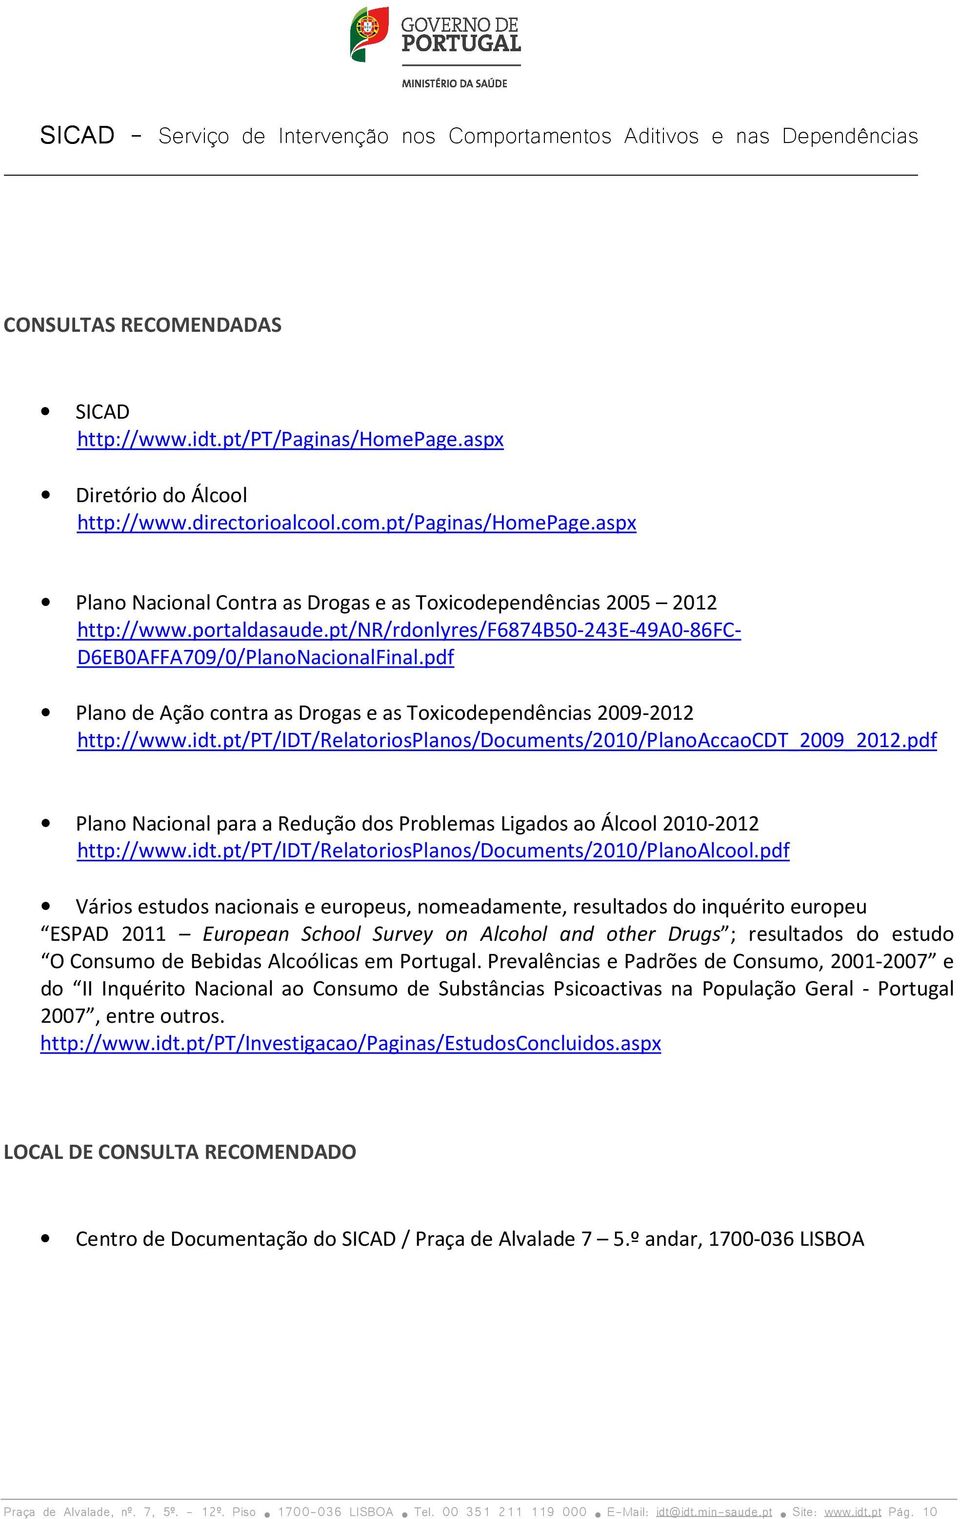 pt/pt/idt/relatoriosplanos/documents/2010/planoaccaocdt_2009_2012.pdf Plano Nacional para a Redução dos Problemas Ligados ao Álcool 2010-2012 http://www.idt.pt/pt/idt/relatoriosplanos/documents/2010/planoalcool.